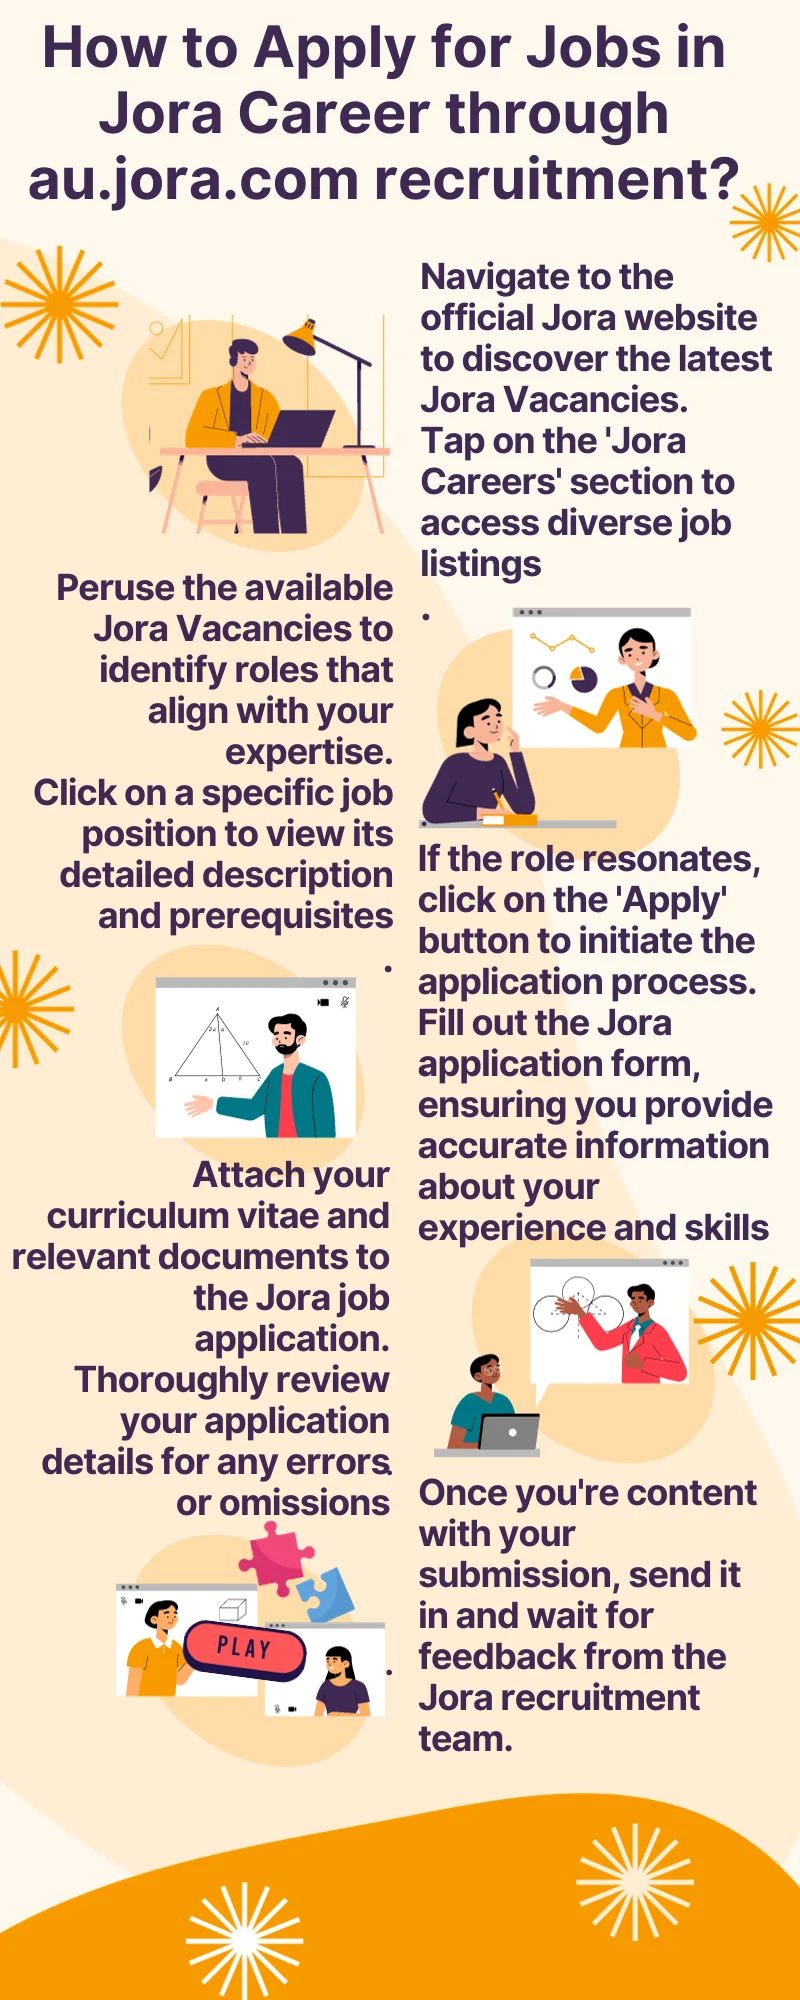 How to Apply for Jobs in Jora Career through au.jora.com recruitment